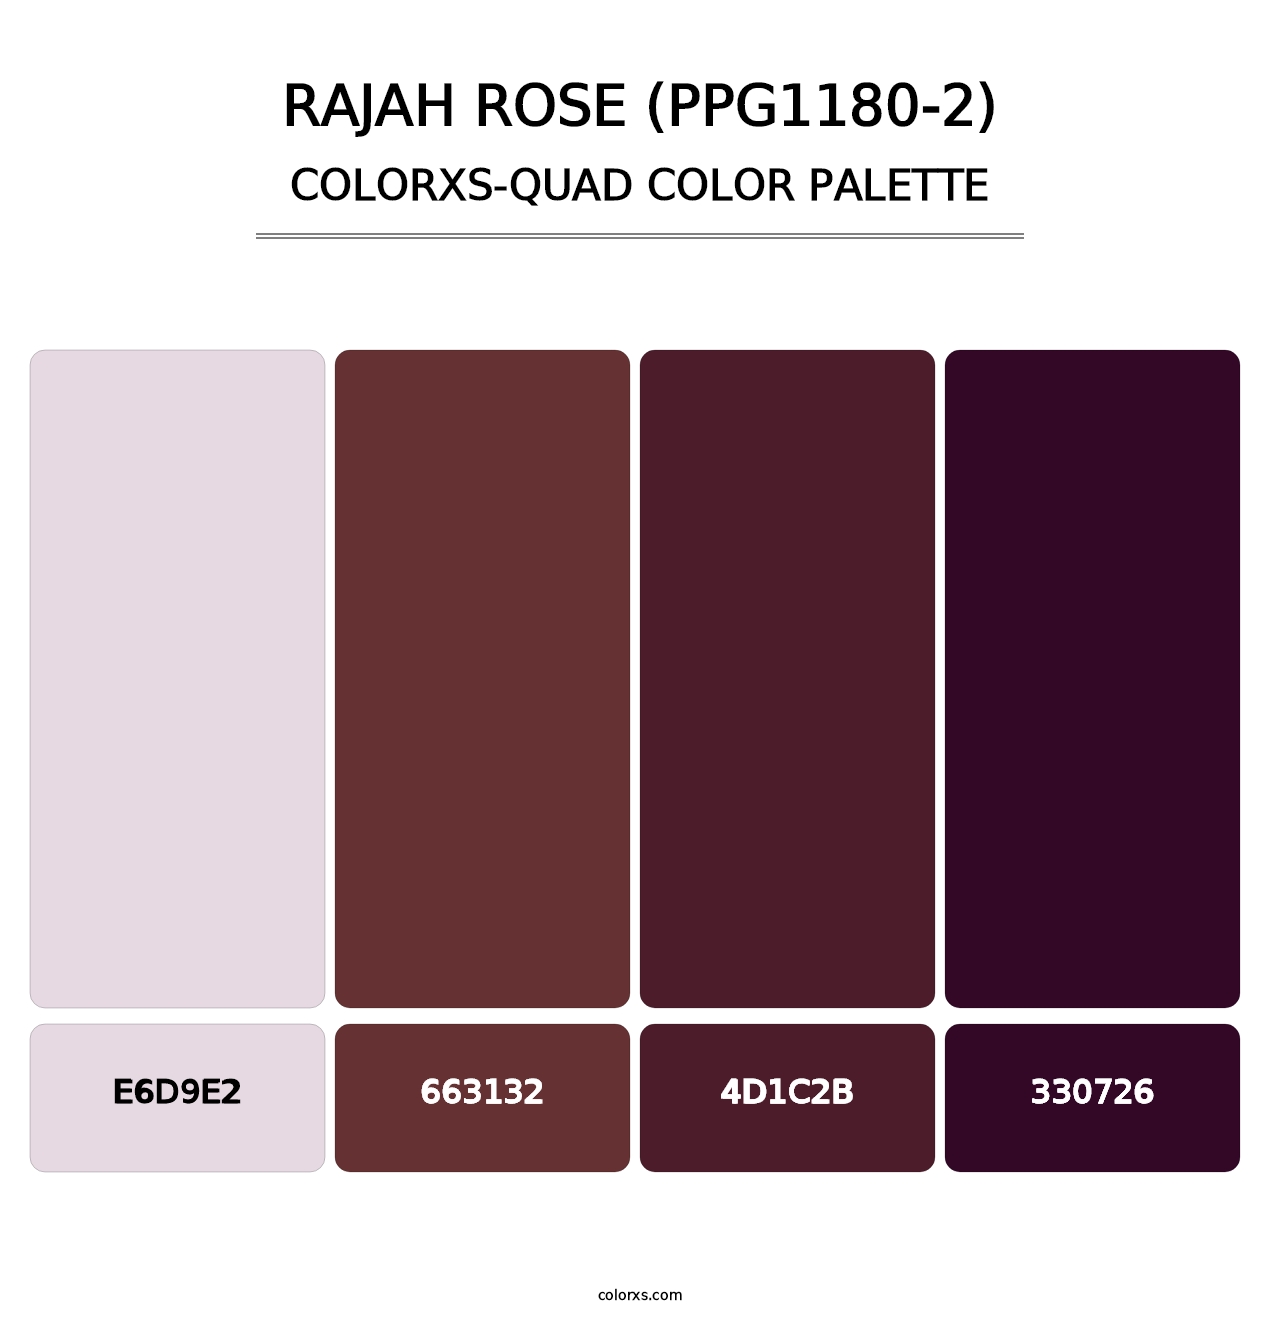 Rajah Rose (PPG1180-2) - Colorxs Quad Palette